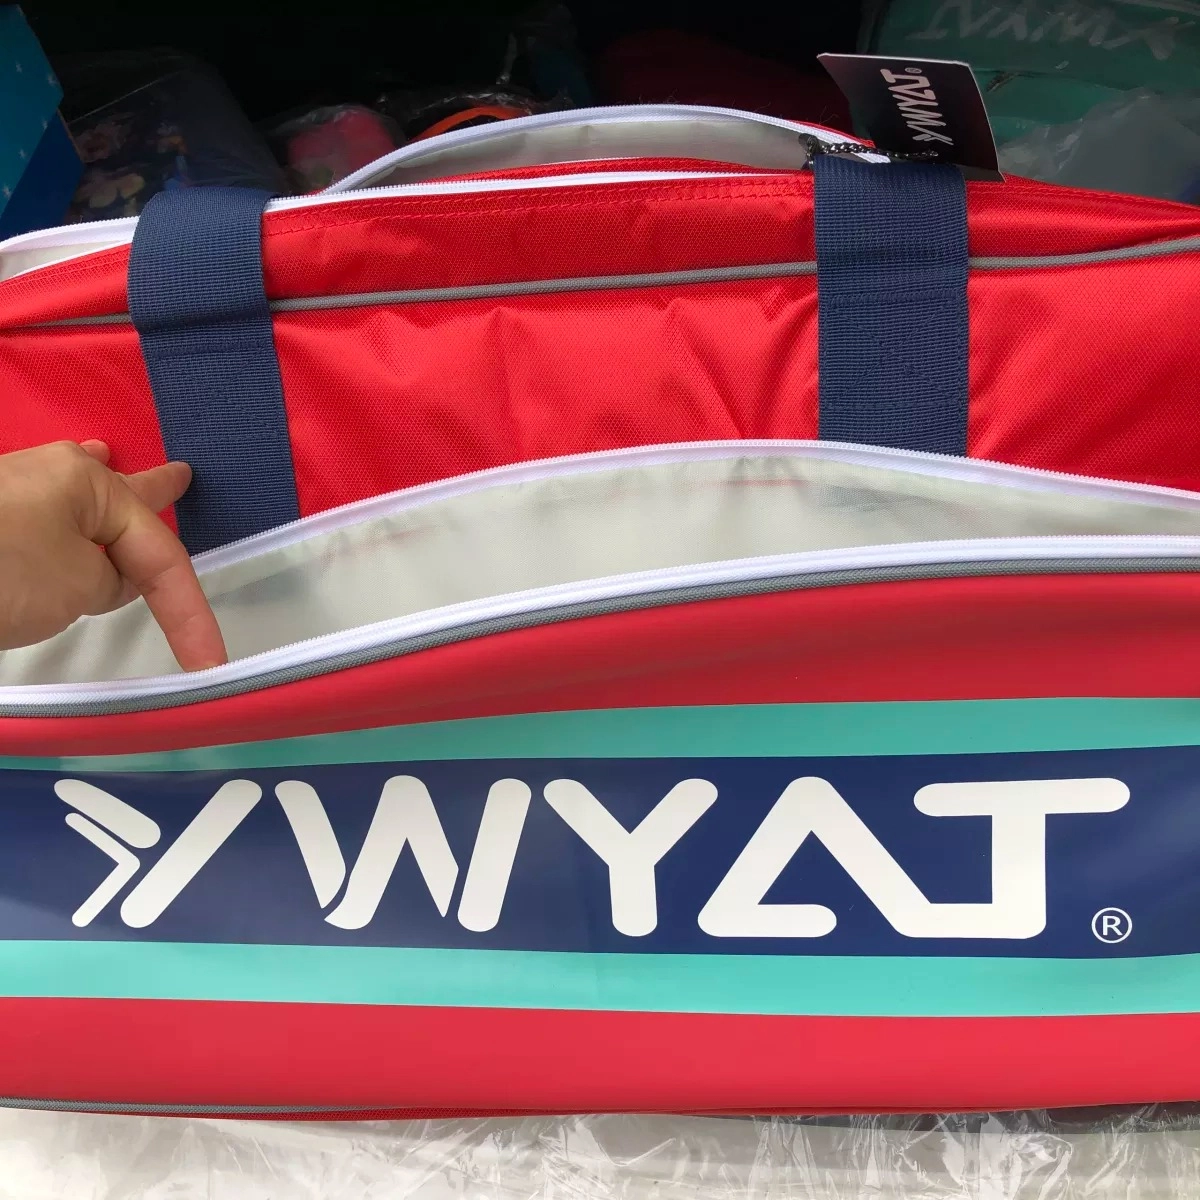 Túi cầu lông Ywyat CF-996 Đỏ - Gia công